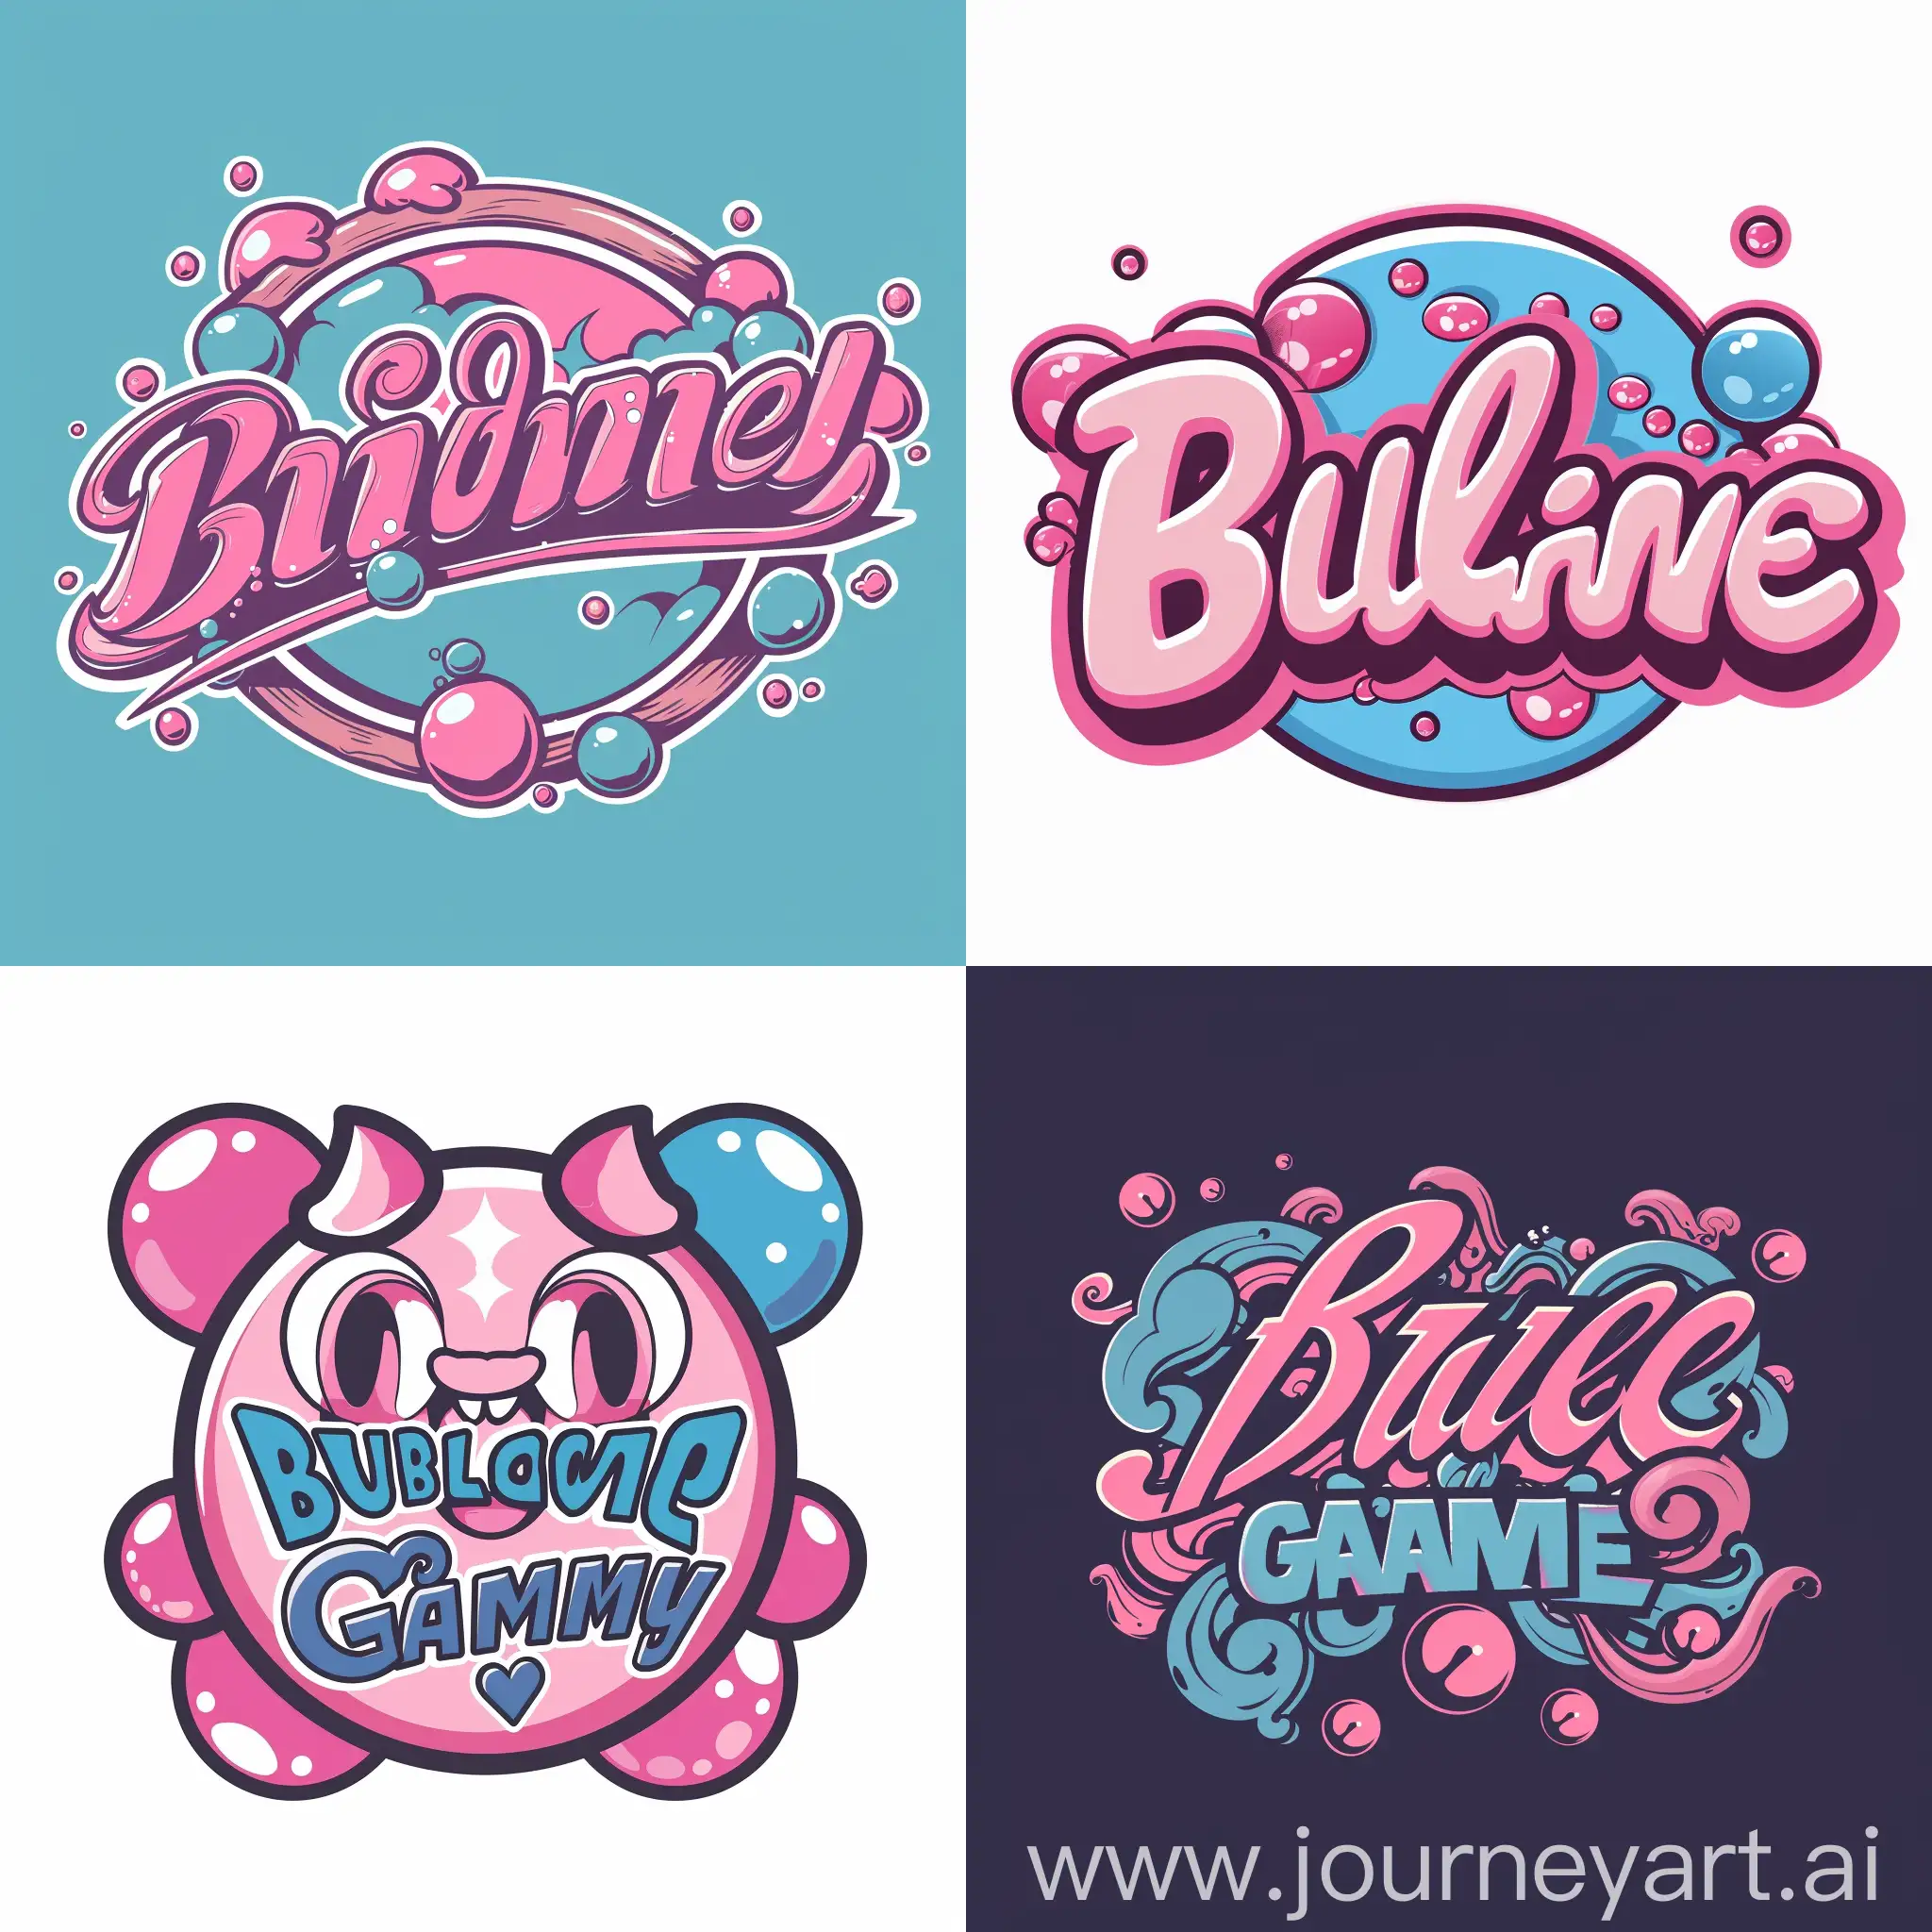 создай логотип для компании по продаже игр с названием bubble game. название должно быть на лого. оформи лого в розово-синем цвете